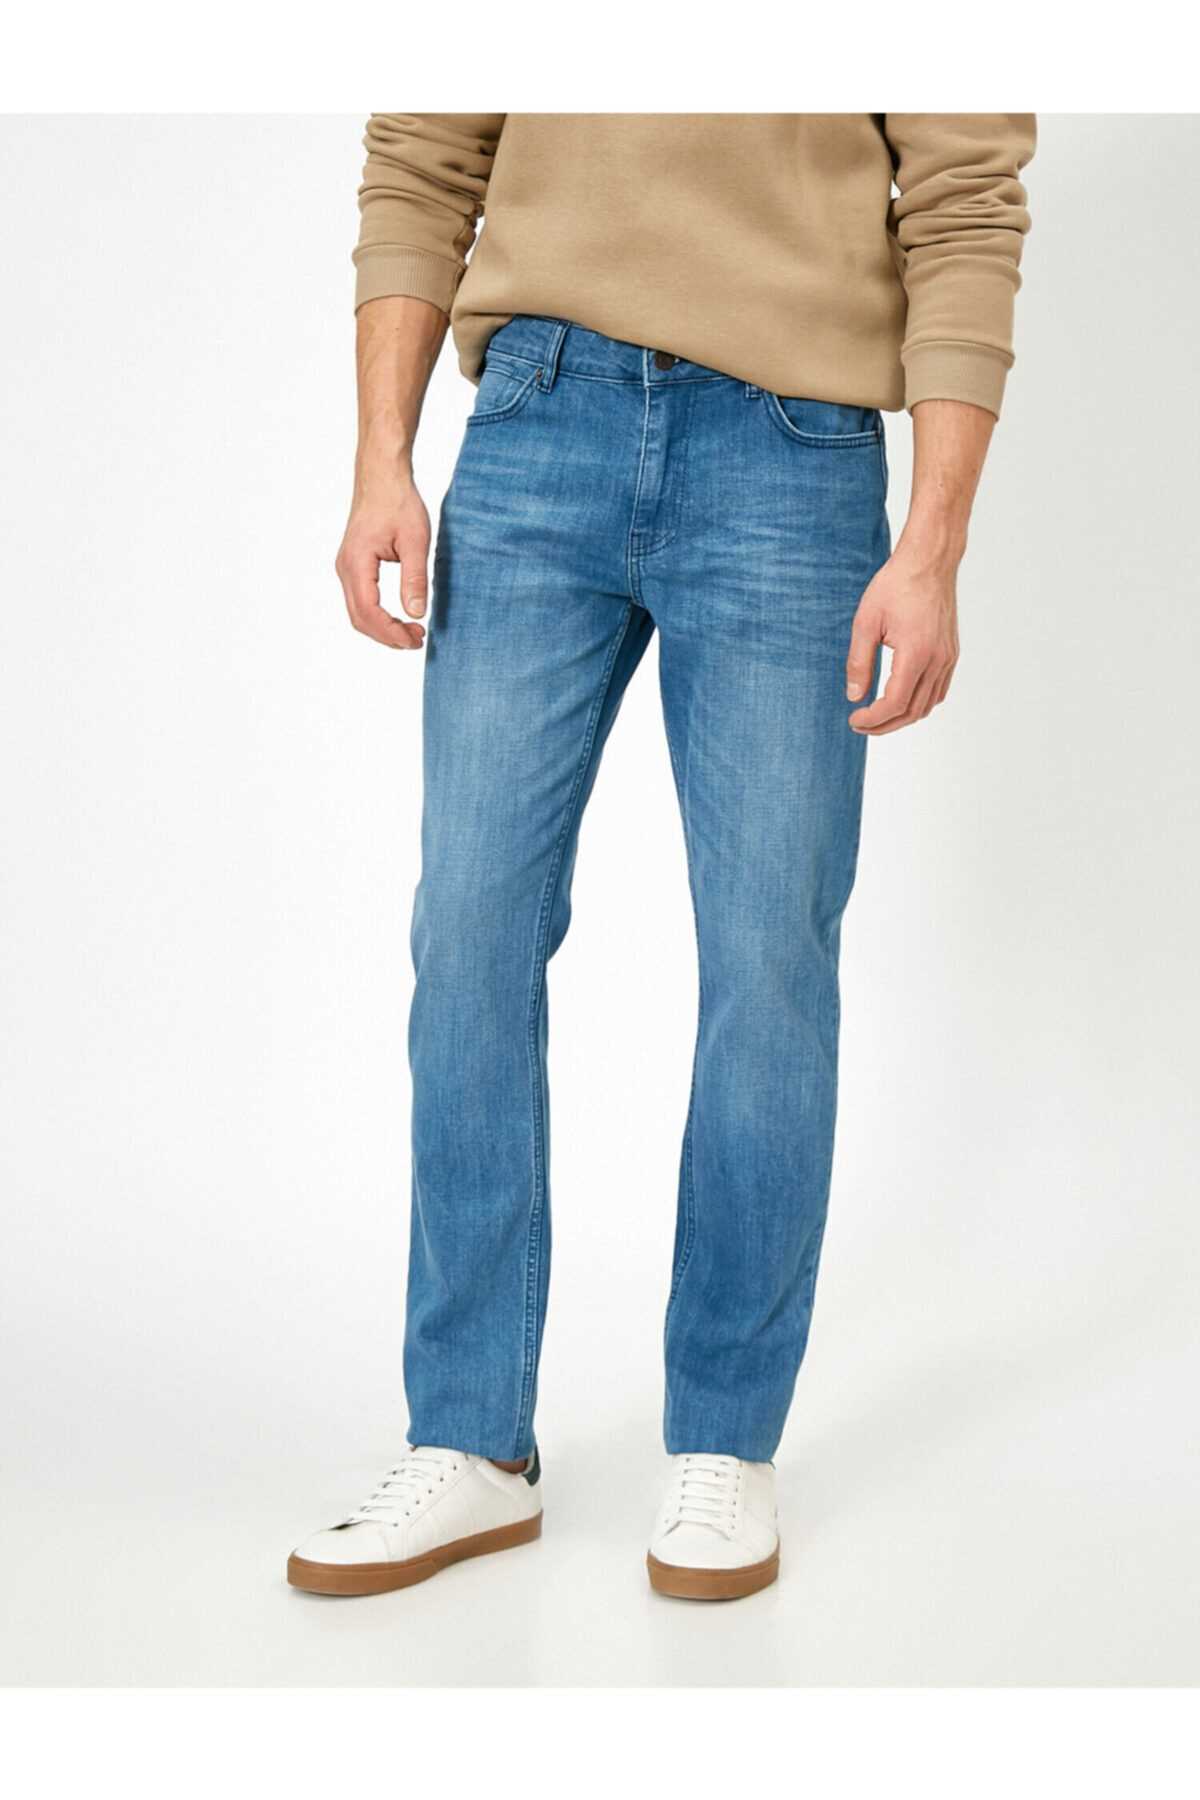 فروش انلاین شلوار جین مردانه برند کوتون رنگ نفتی ty36358150